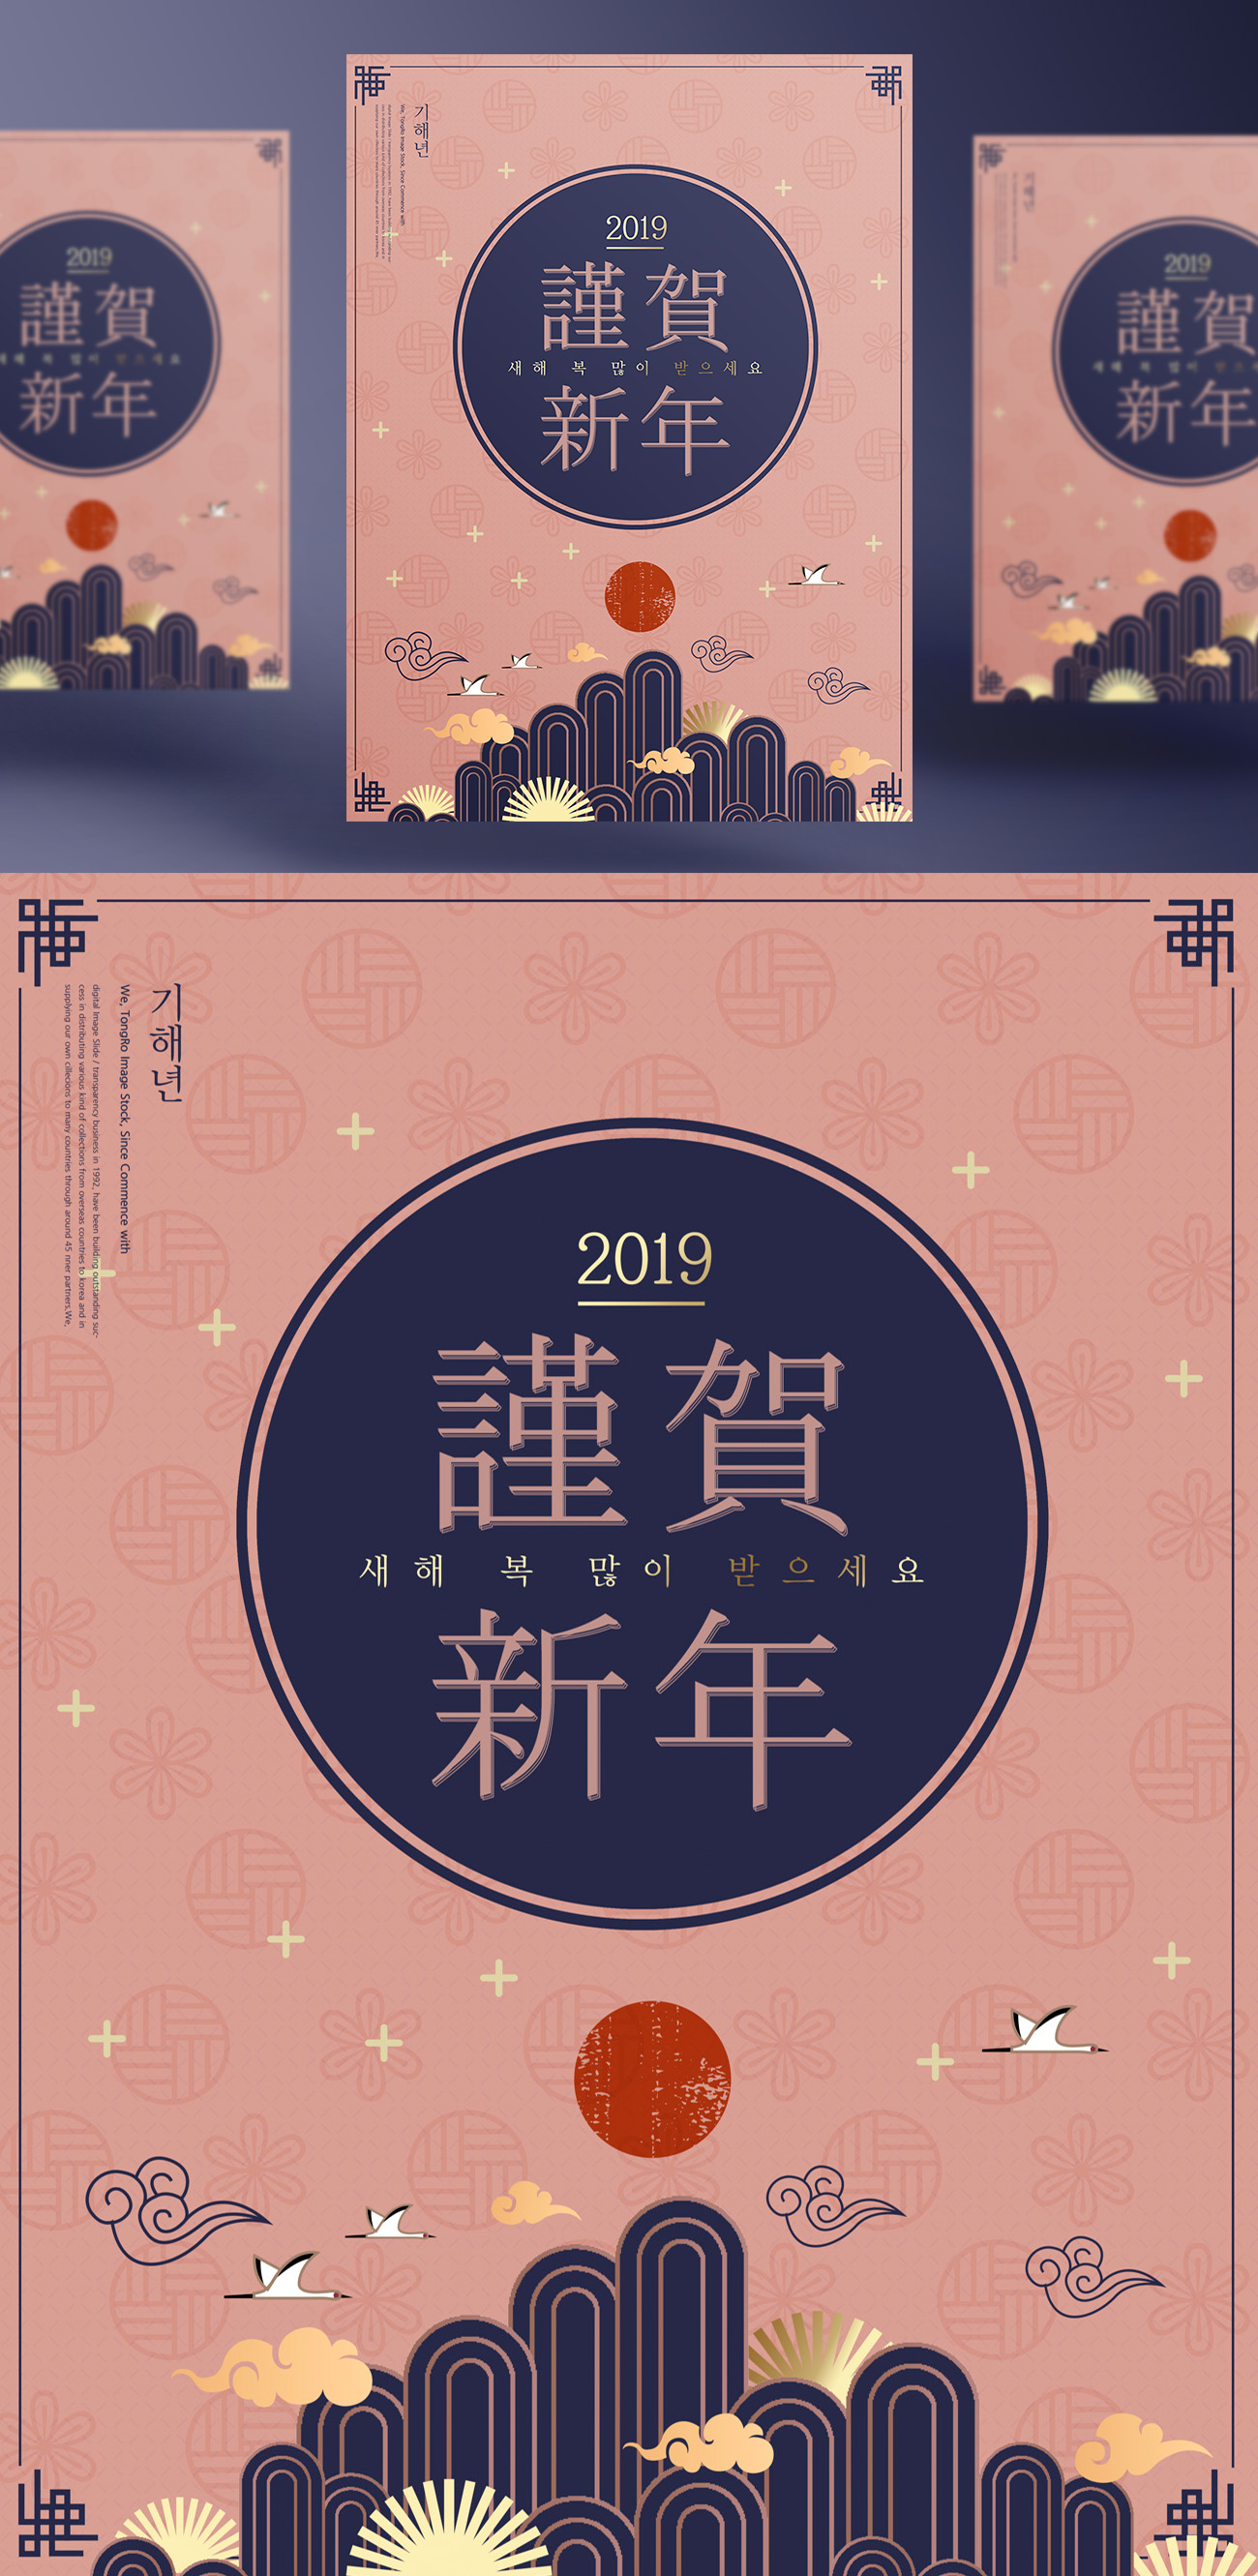 2019年谨贺新年东方传统版式海报PSD模版素材